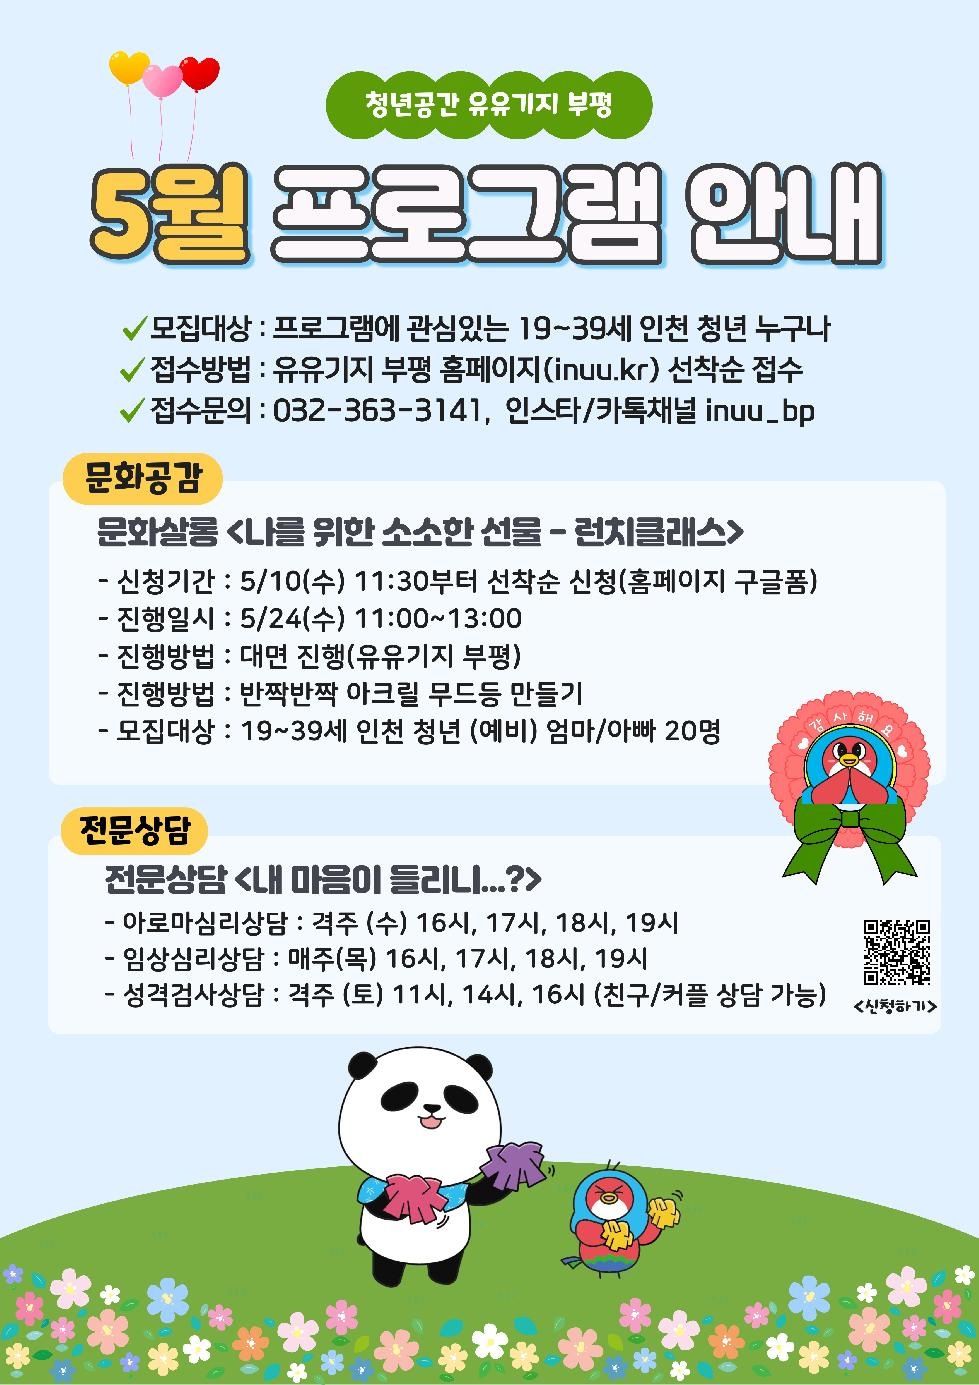 인천 부평구 청년공간 유유기지 부평, 5월 프로그램 참여자 모집